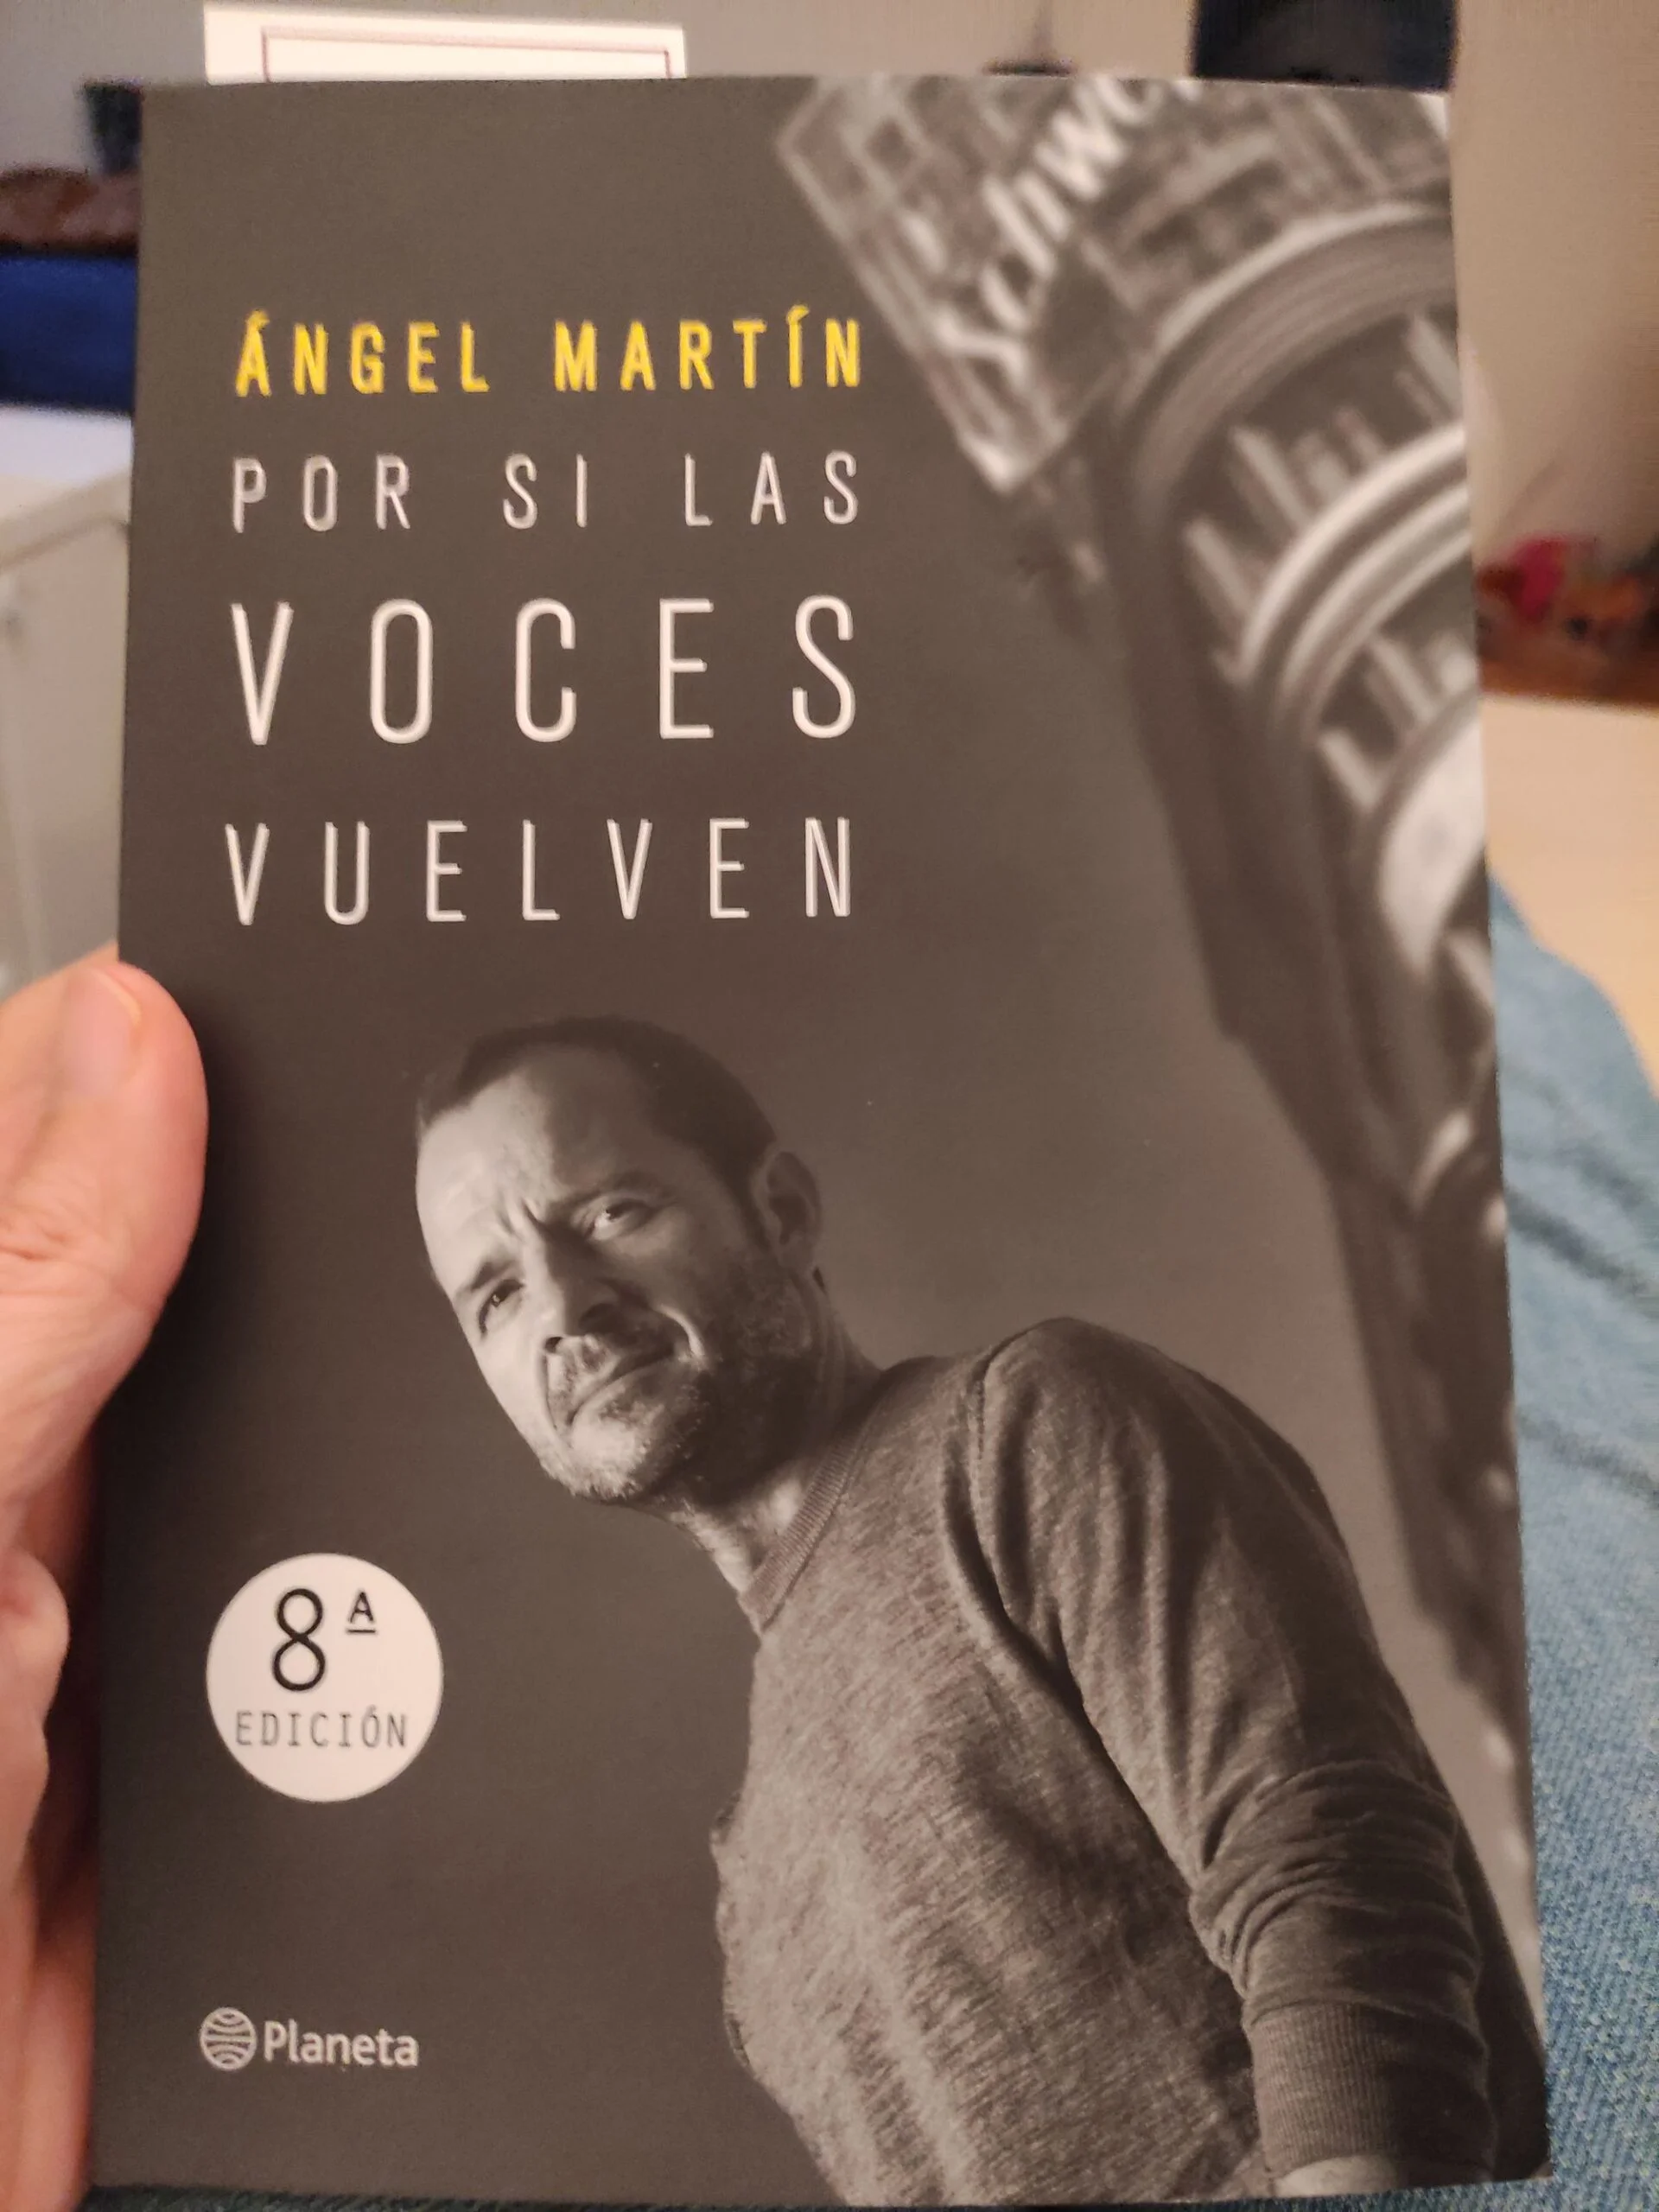 Ángel Martín on X: Hoy hace 8 meses que se publicó Por si las voces  vuelven ( y acabo de encontrar unas lineas que en  algún momento pretendían ser el principio. De